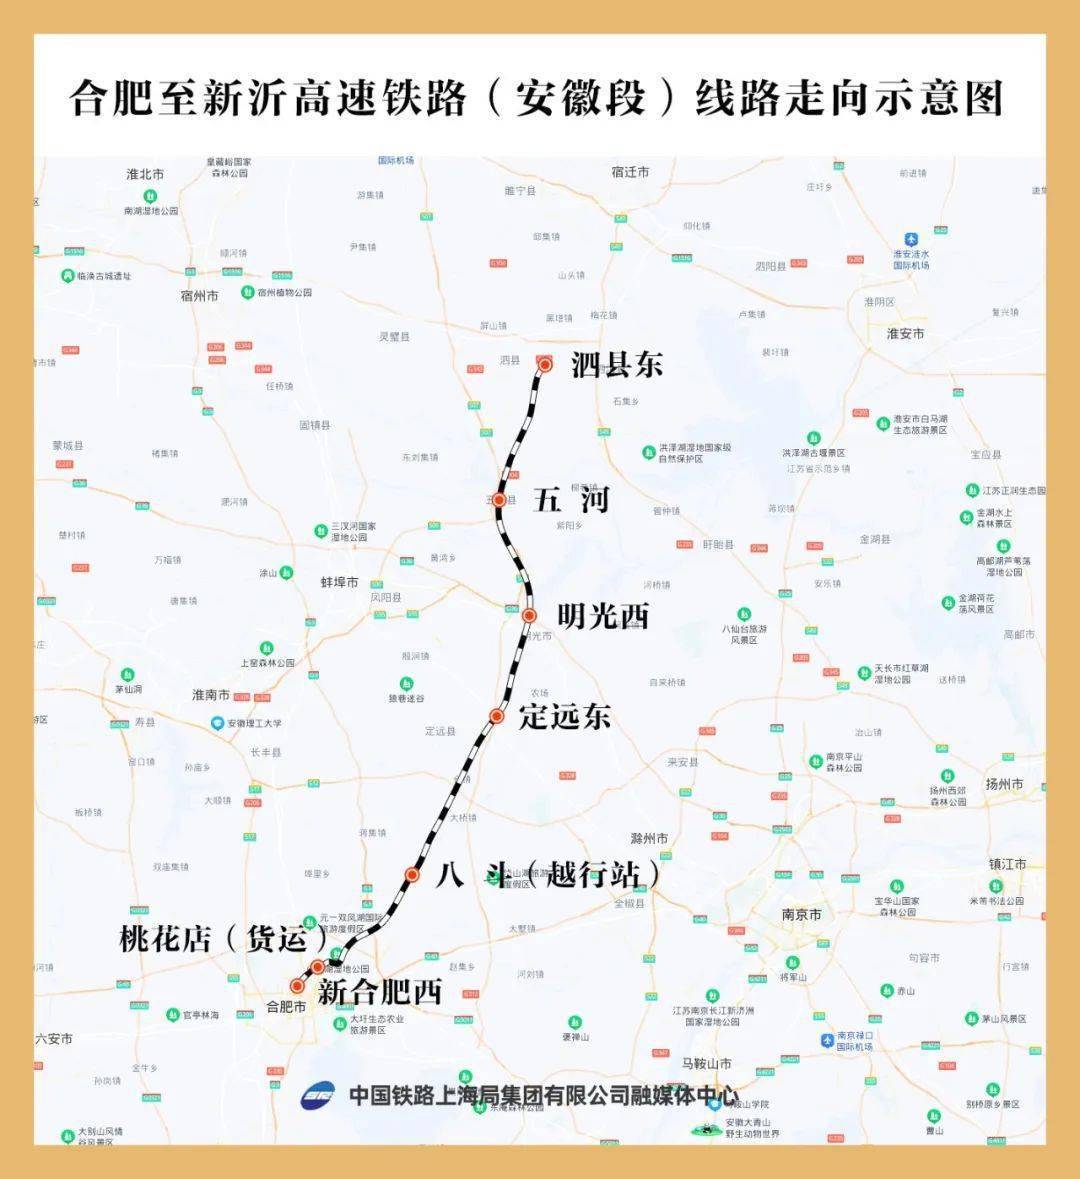 线路共设泗县东,五河,明光西,定远东,八斗,桃花店,新合肥西等7个车站.